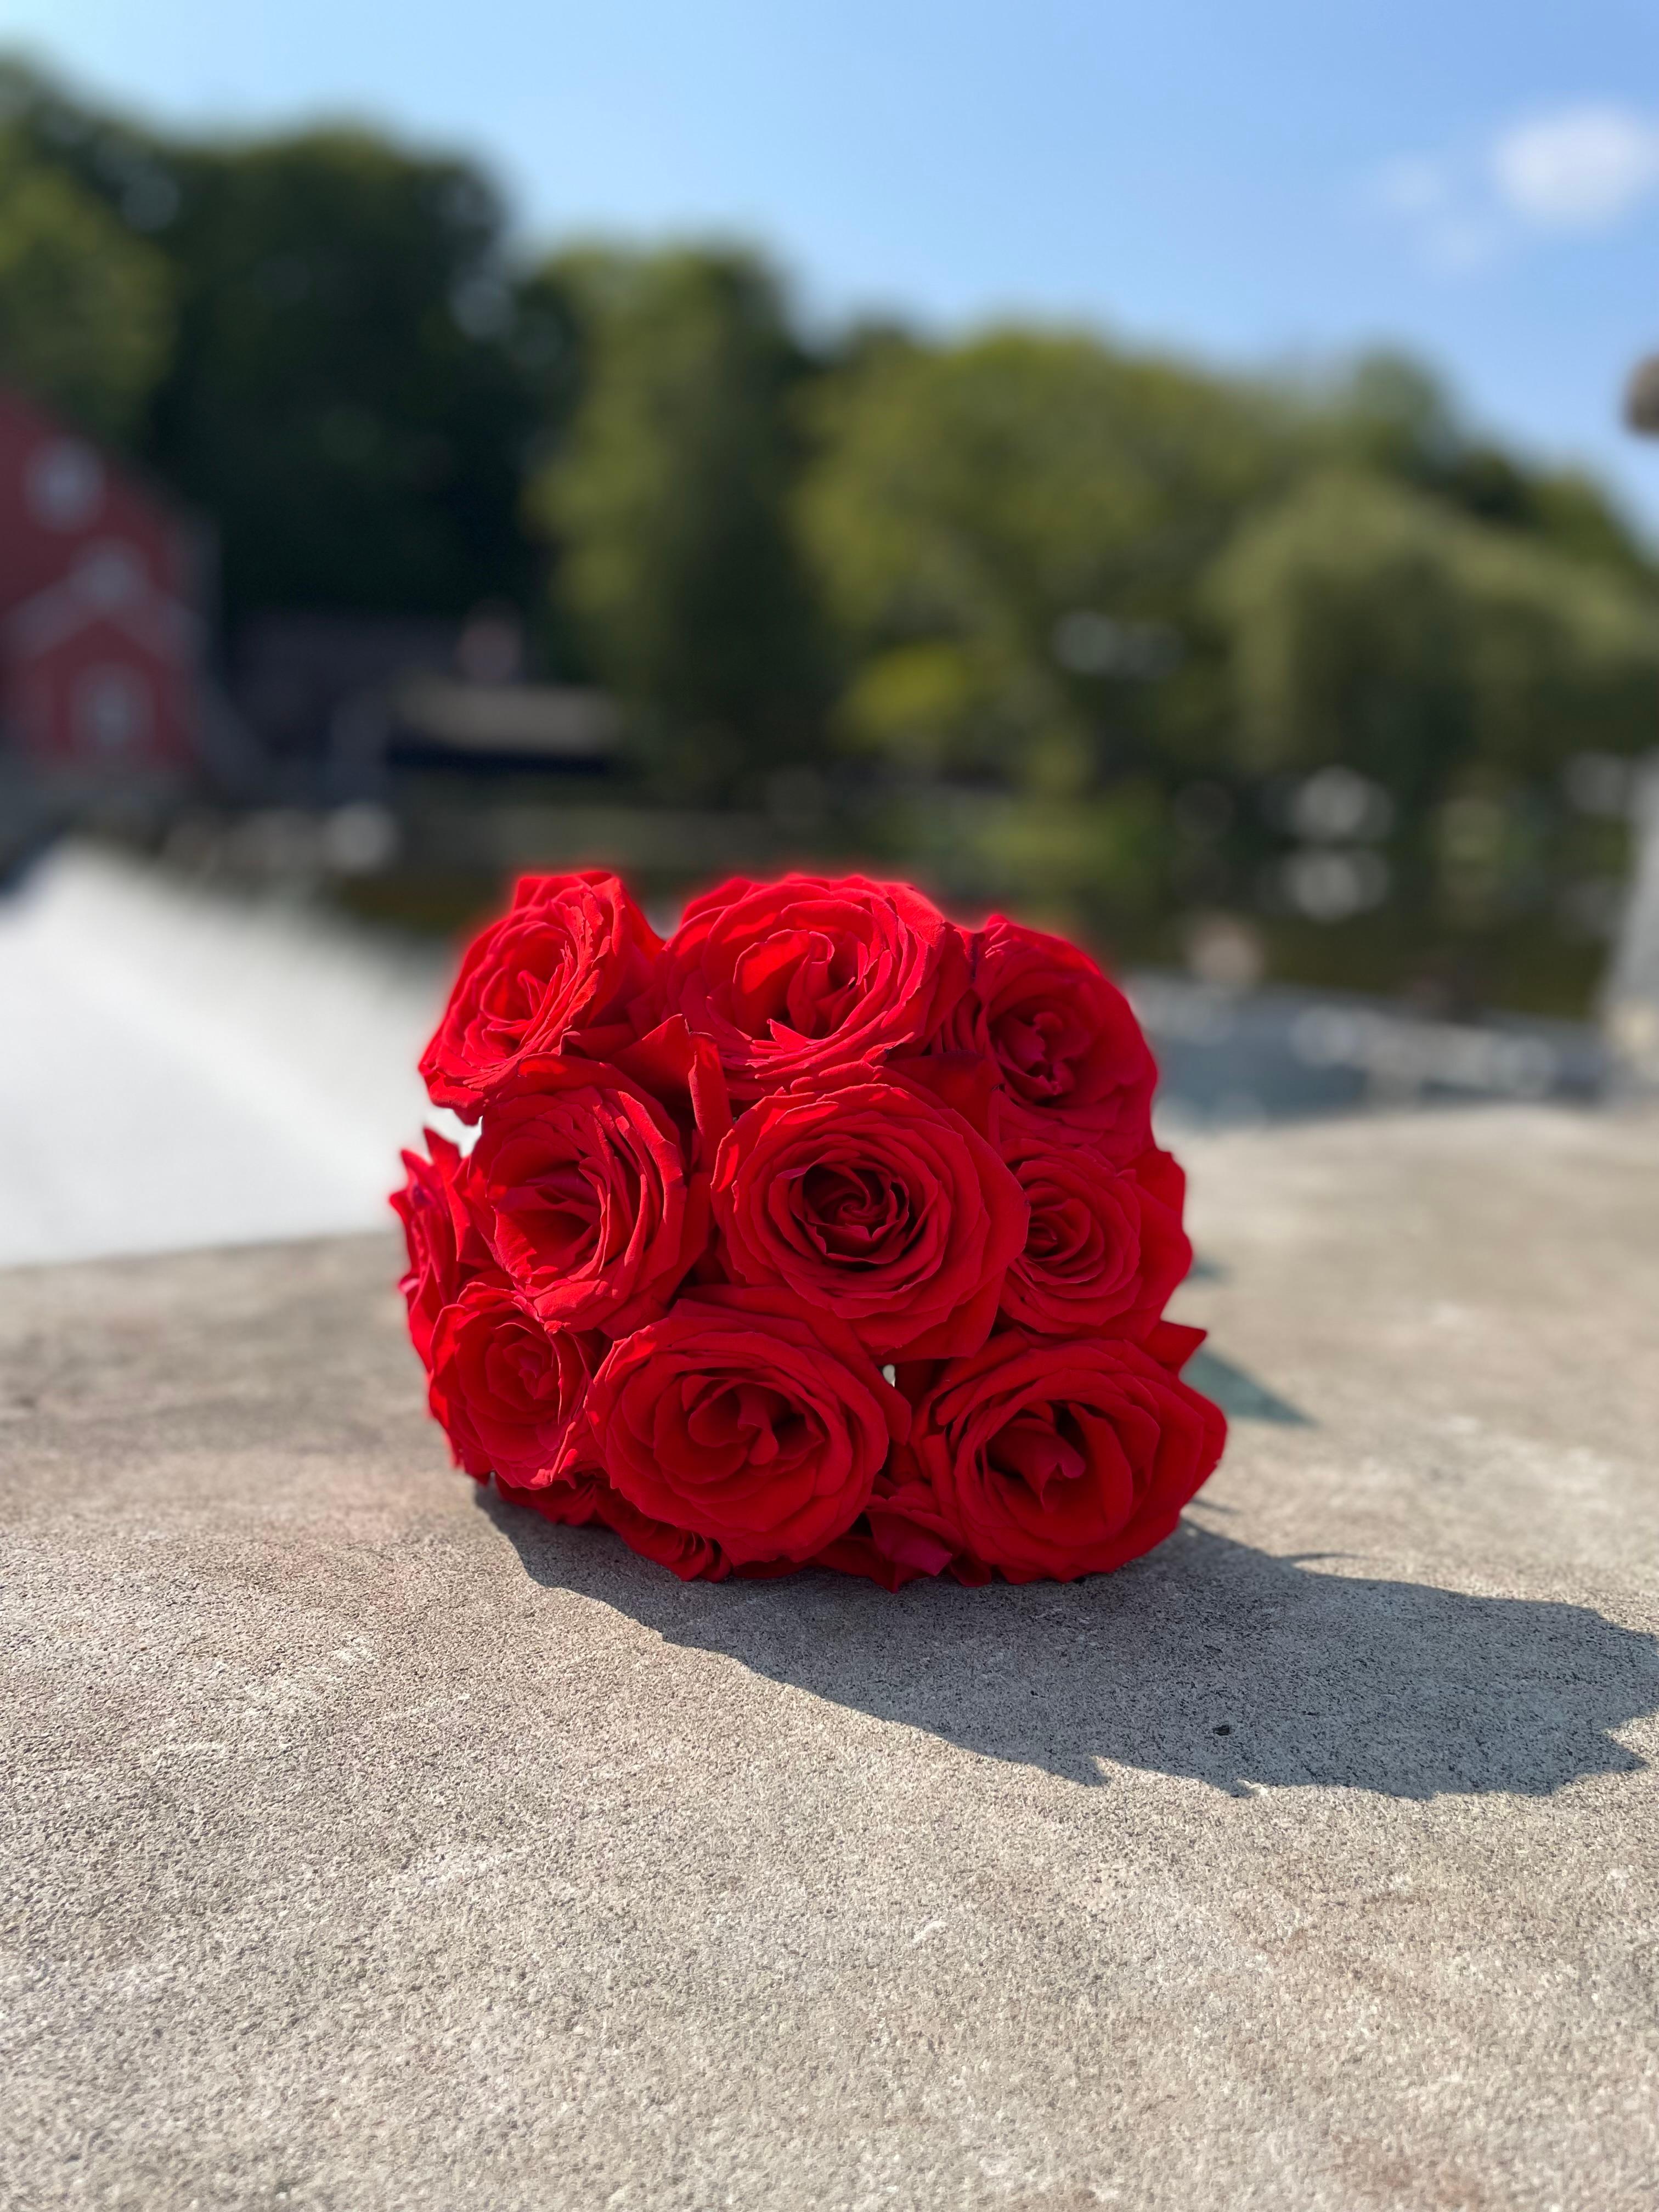 Diese handgefertigte 108-Rosen-Mala ist eine Symphonie aus roten und rosafarbenen Rosen, die ihre jahrhundertealten Geschichten von Liebe, Leidenschaft und zarter Stärke singen.

Handgerollt mit Hingabe und Kunstfertigkeit. Die Rosen sind nur die